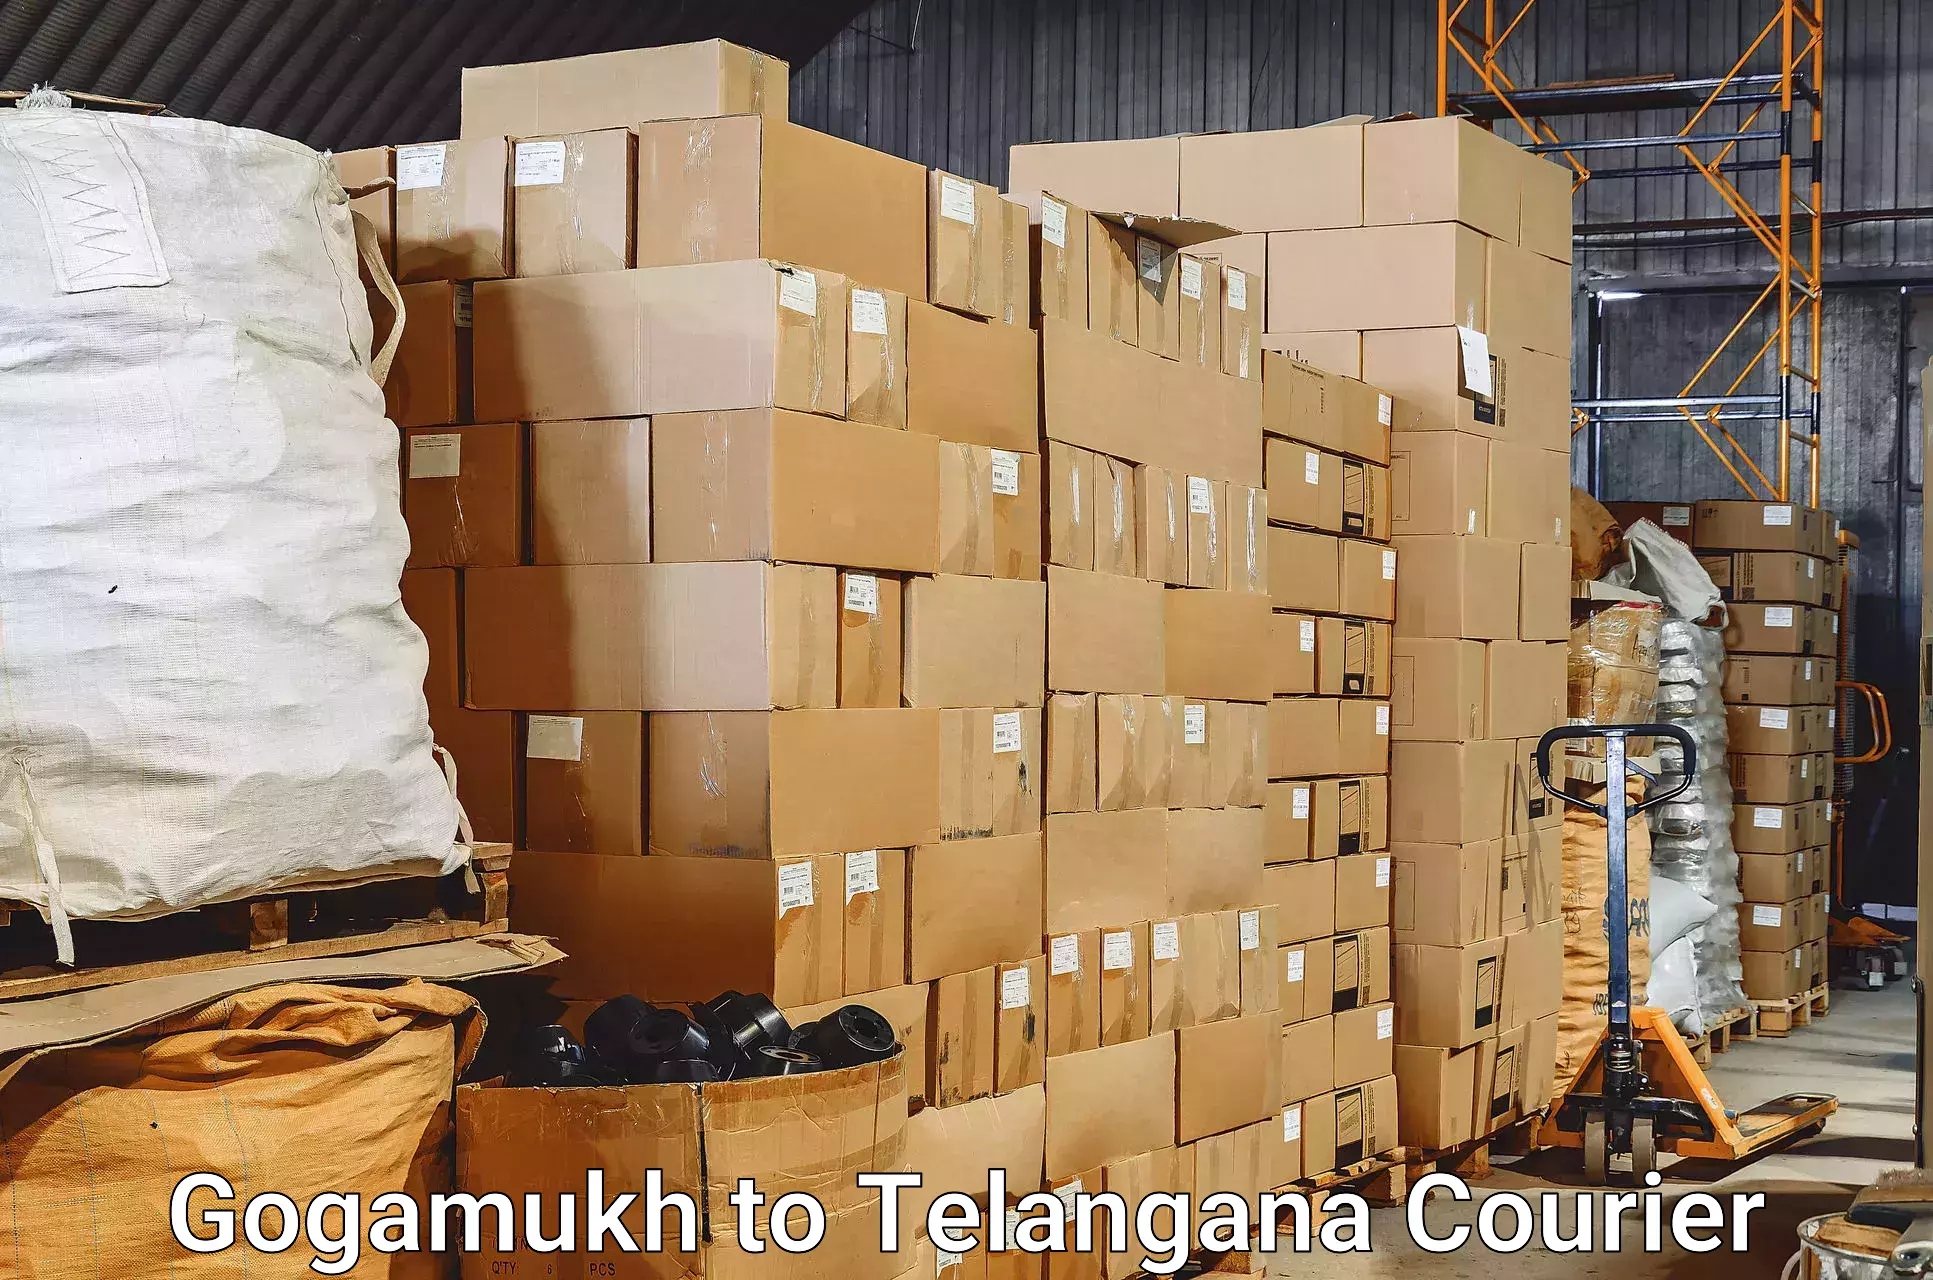 Baggage transport innovation Gogamukh to Thungathurthi